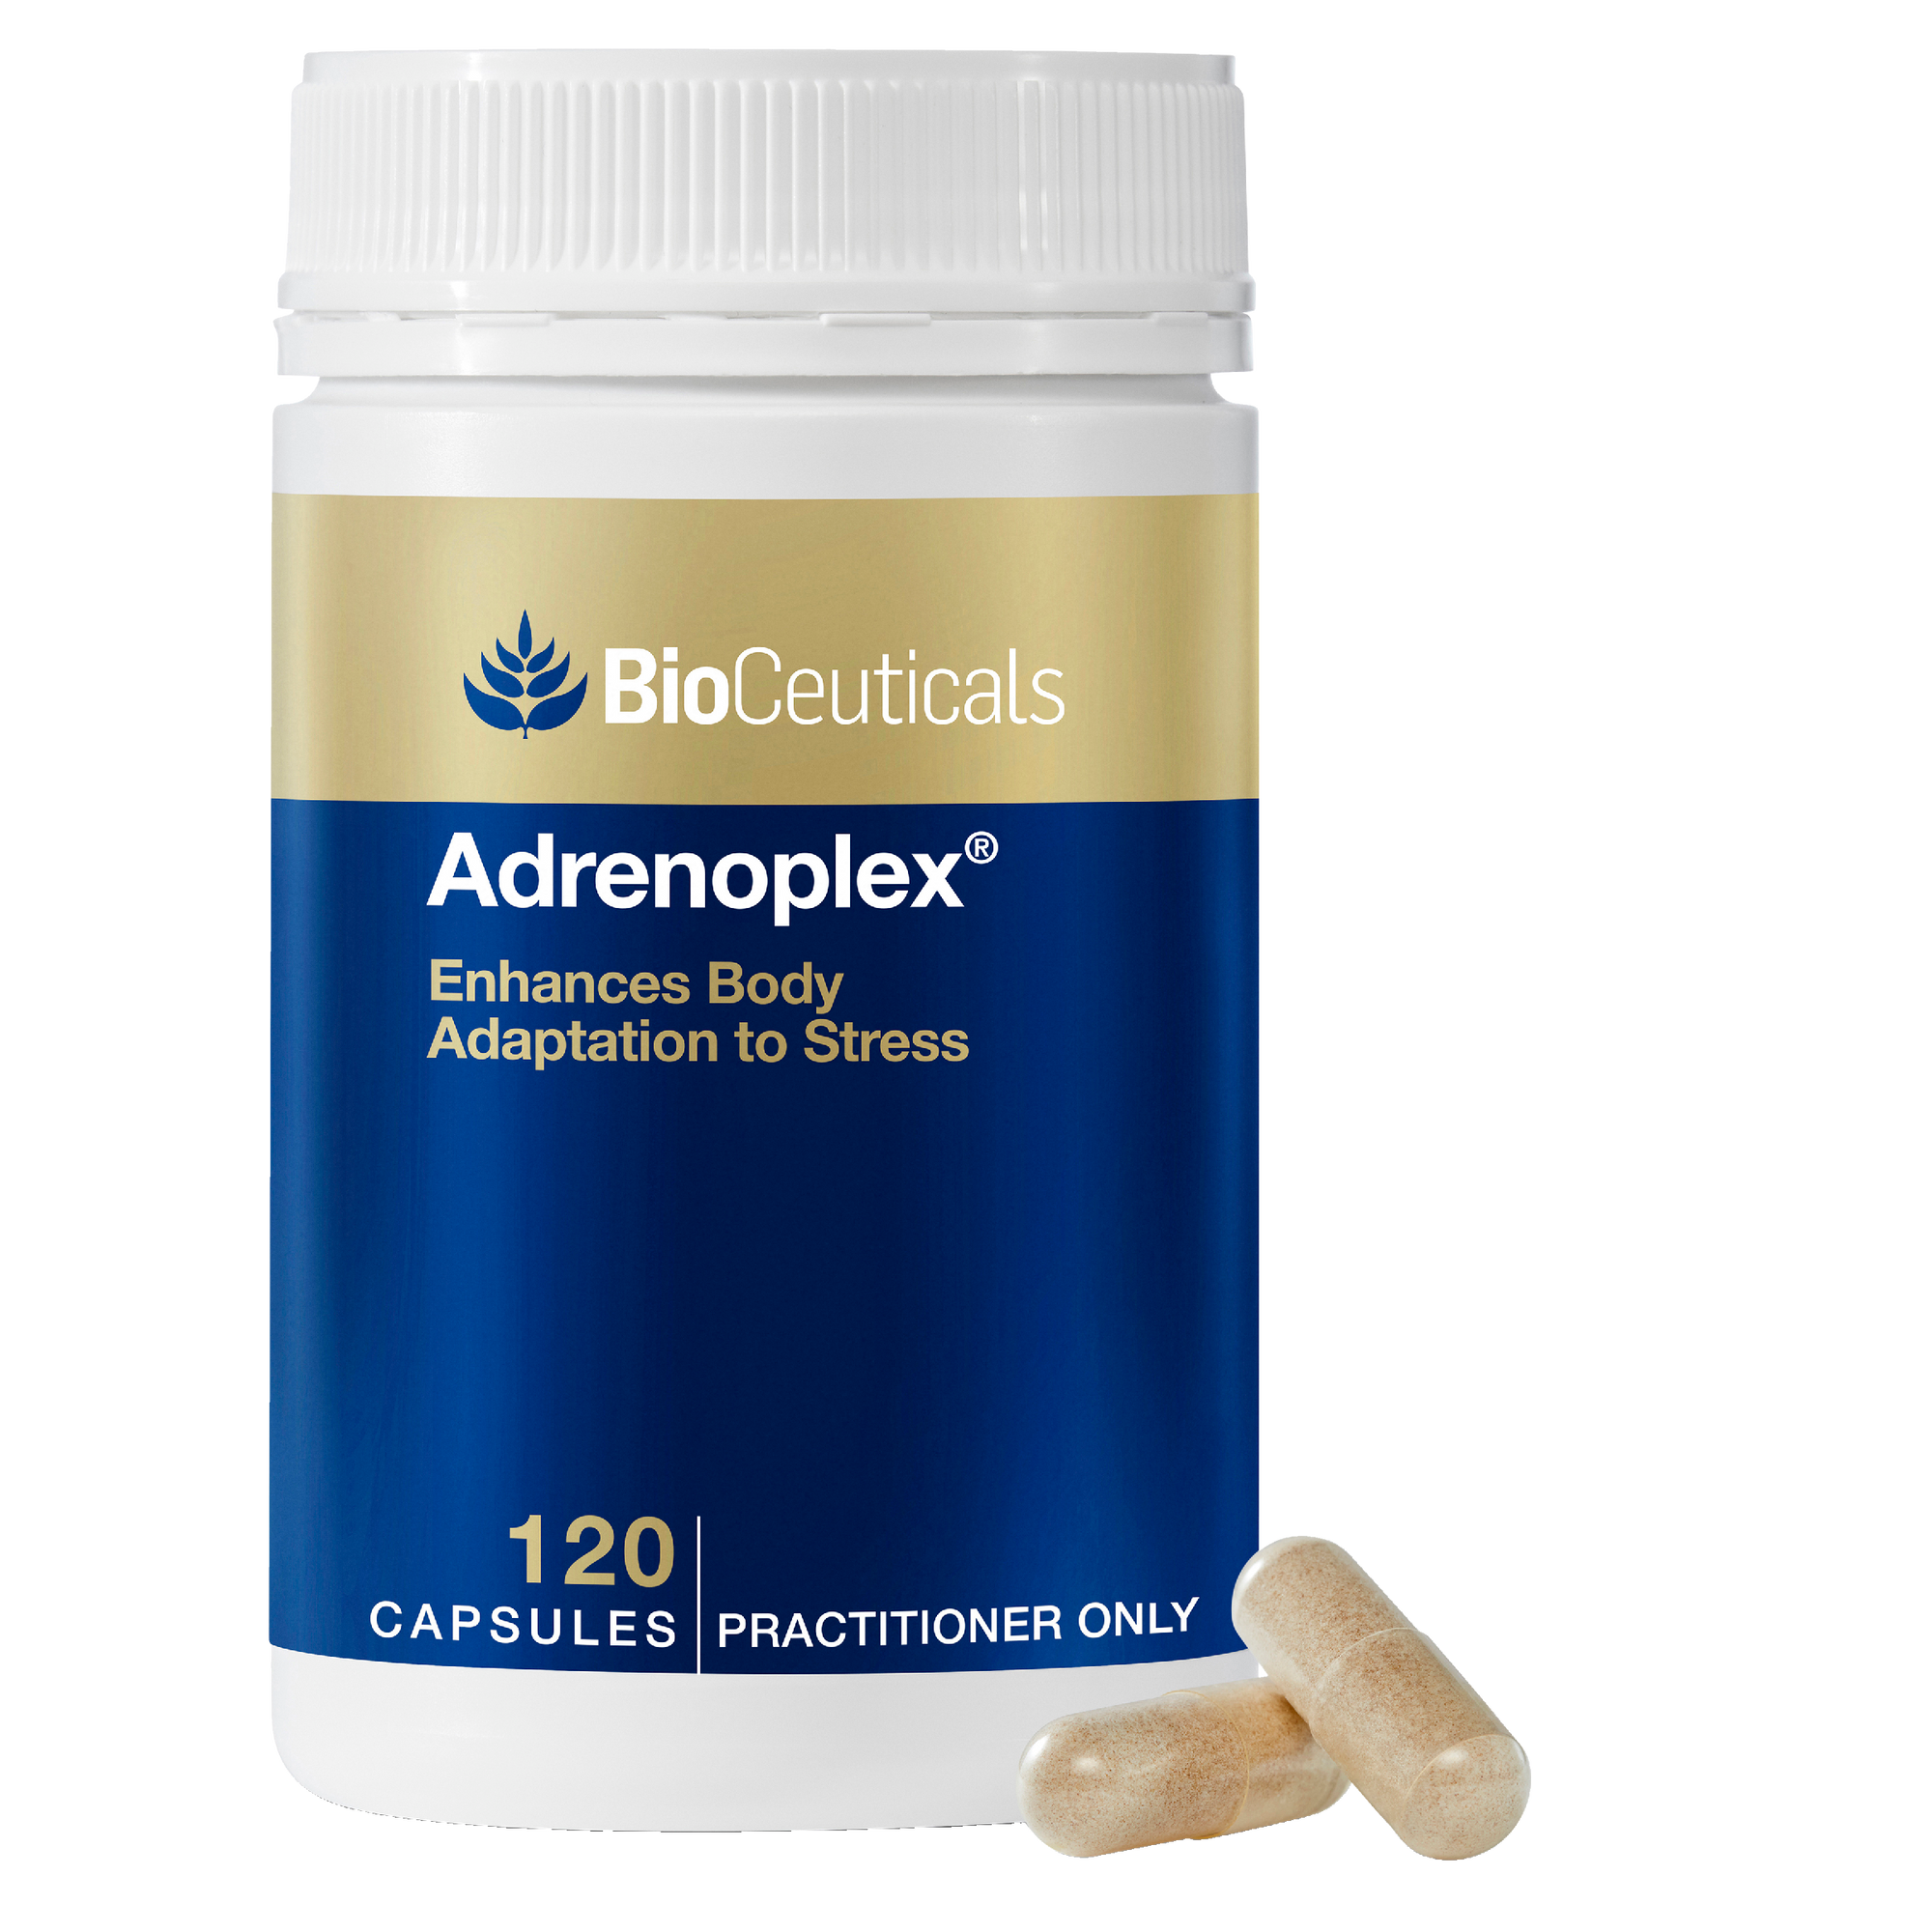 BioCeuticals Adrenoplex®